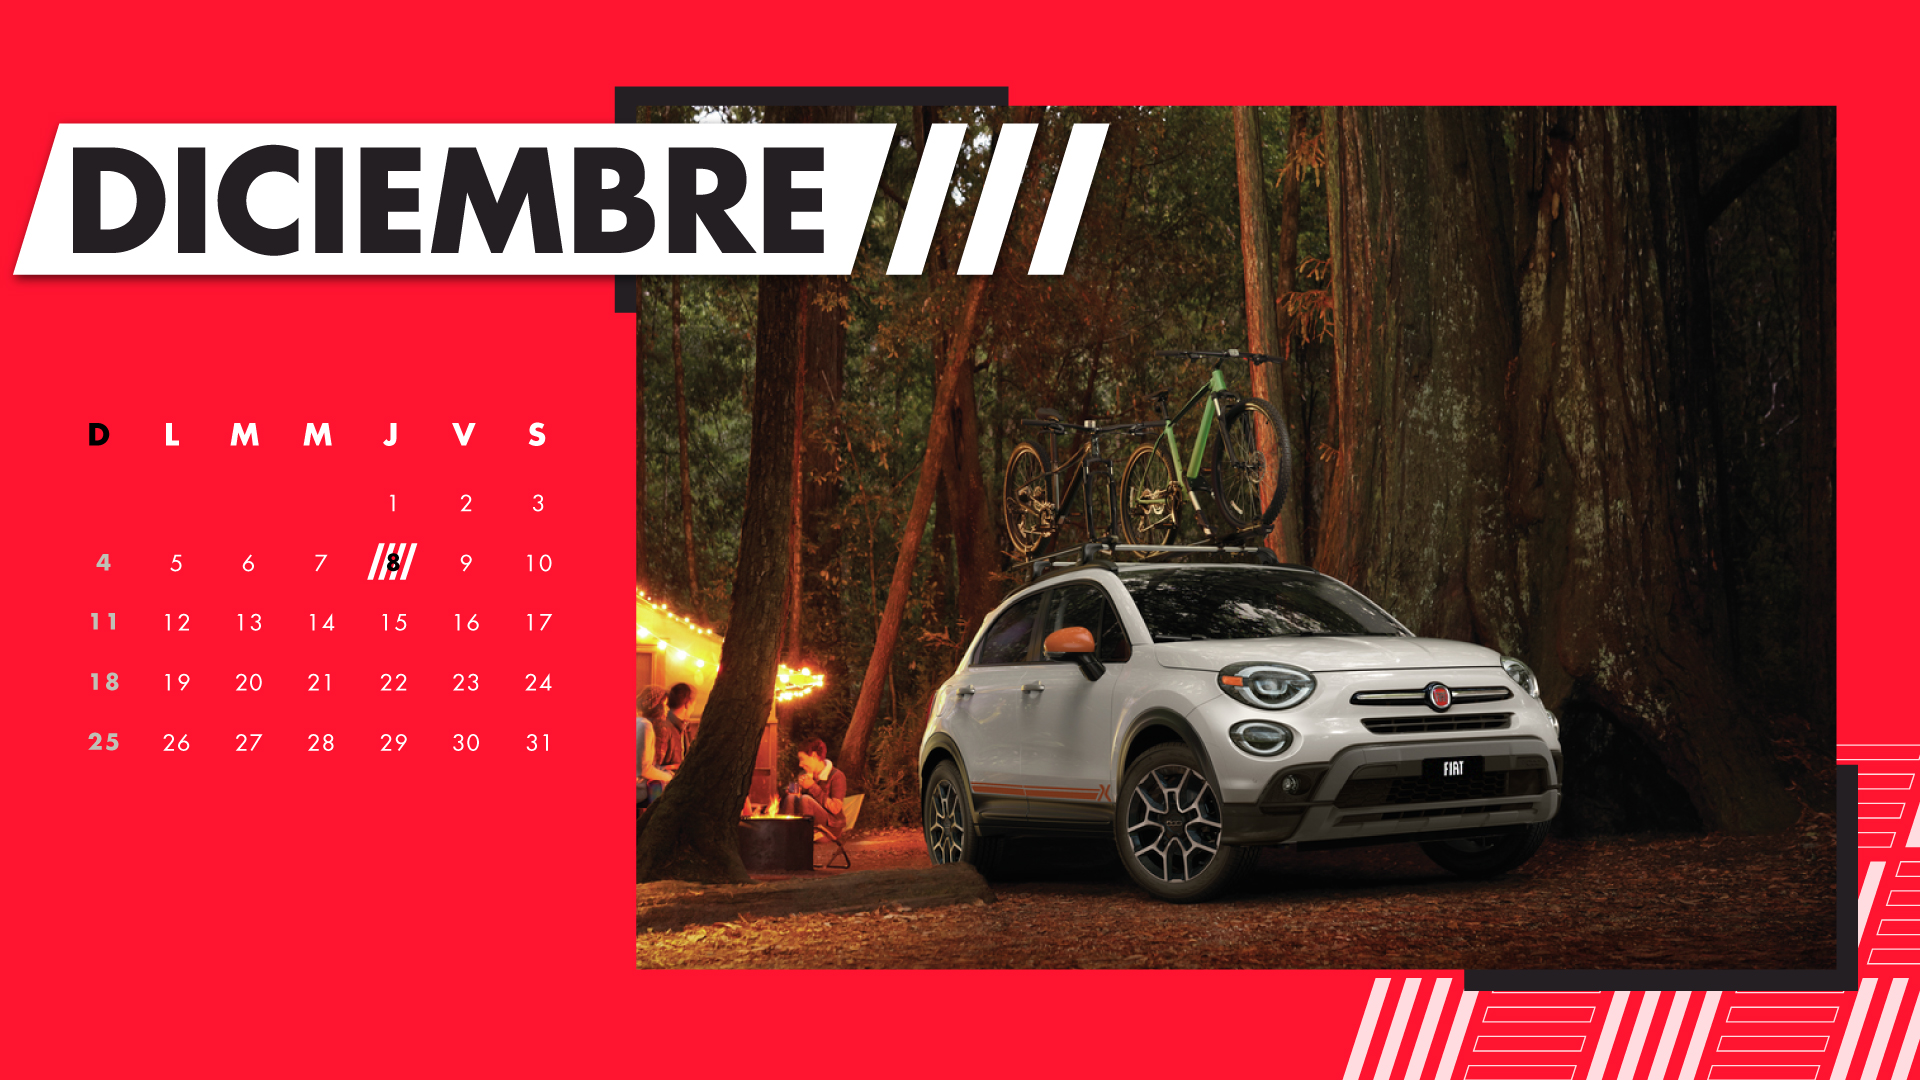 Carro Fiat color blanco en el bosque, calendario Diciembre 2022